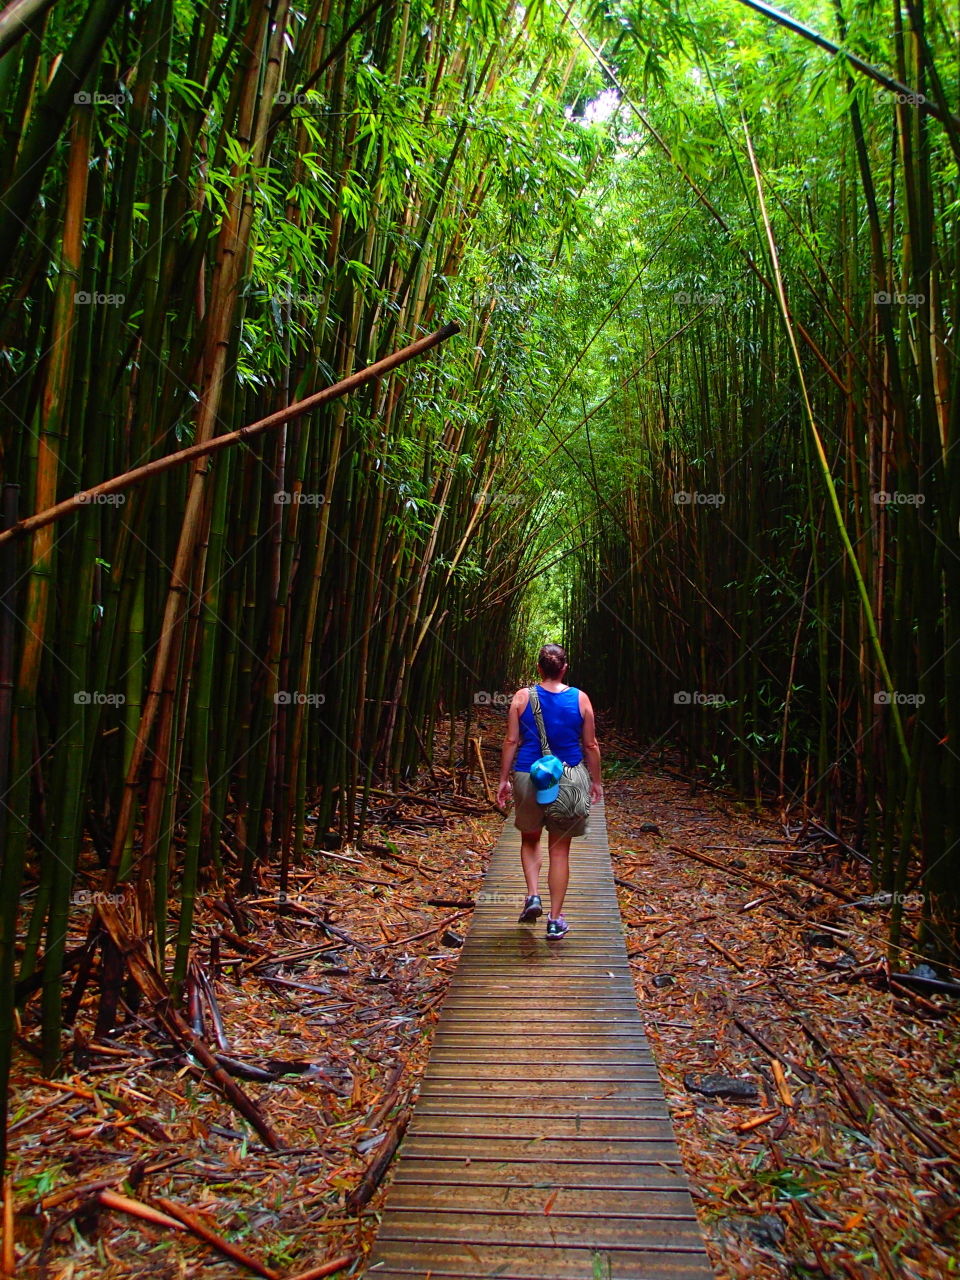 Hiking in Hawaiian bamboo forest 